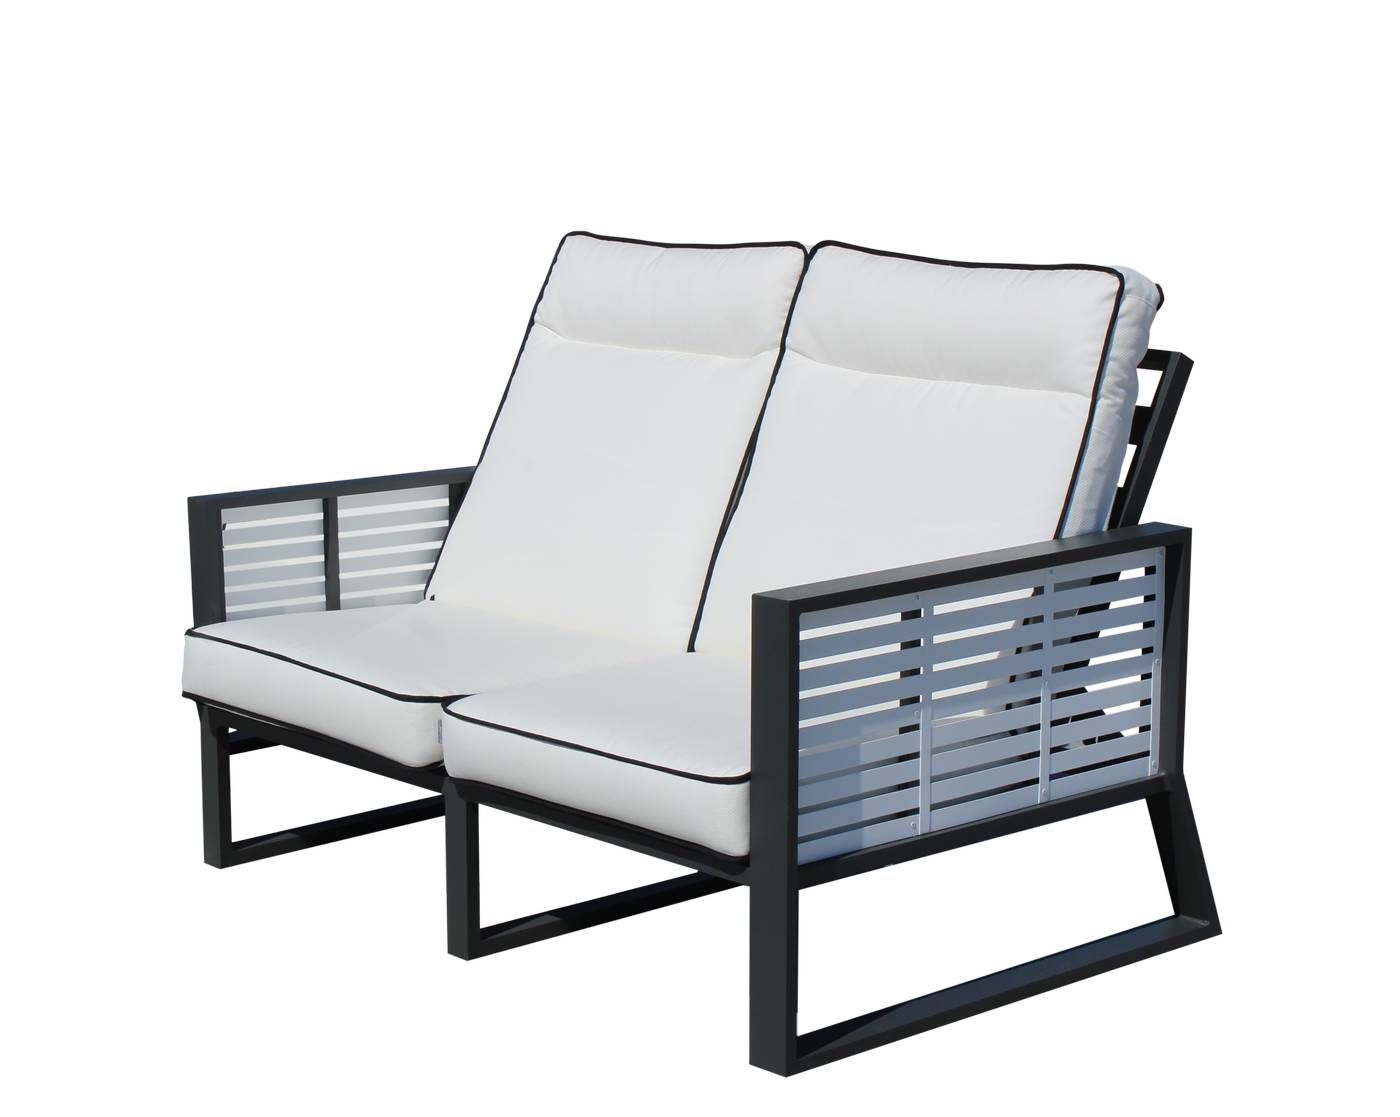 Set Aluminio Luxe Samira-9 - Exclusivo conjunto de alumnio bicolor: 1 sofá de 2 plazas reclinable + 2 sillones reclinables + 2 reposapiés + 1 mesa de centro.